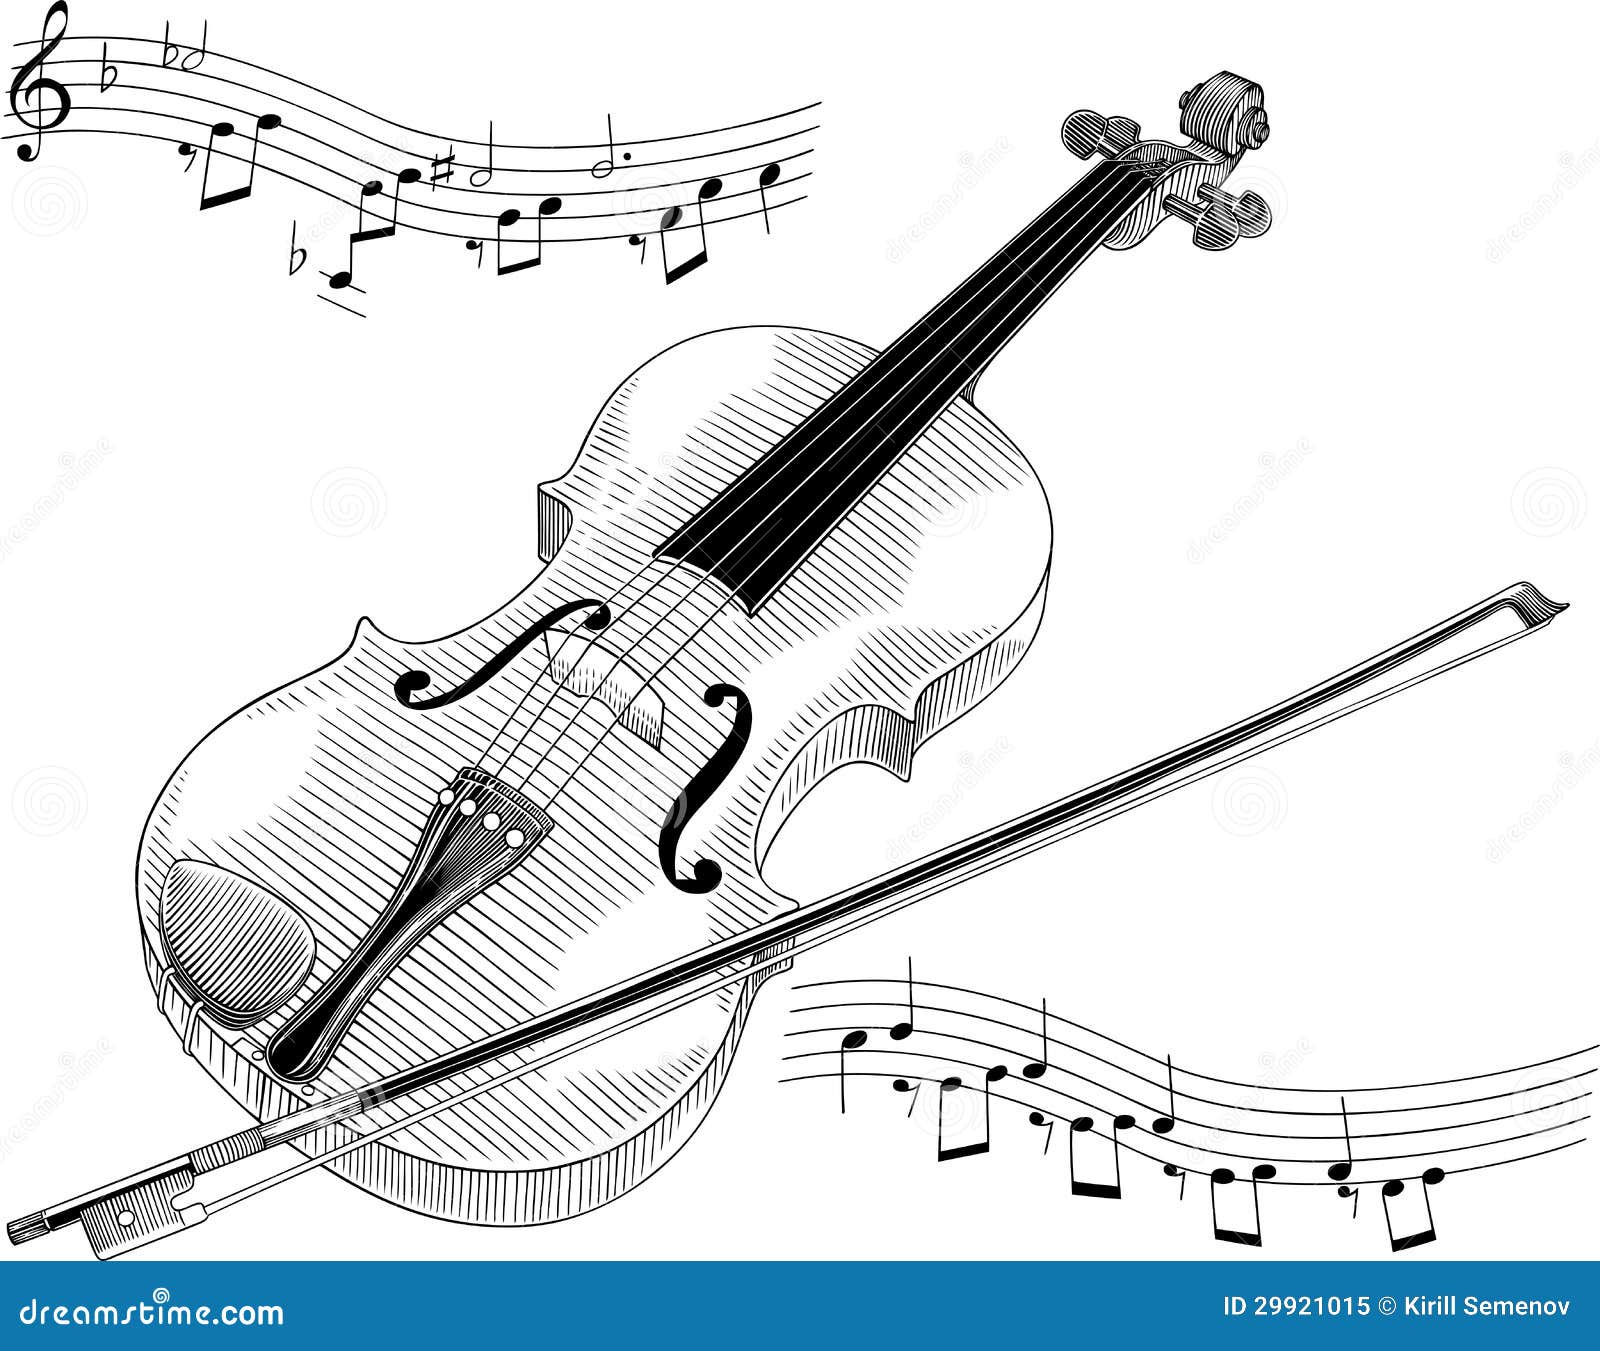 free black and white violin clip art - photo #12